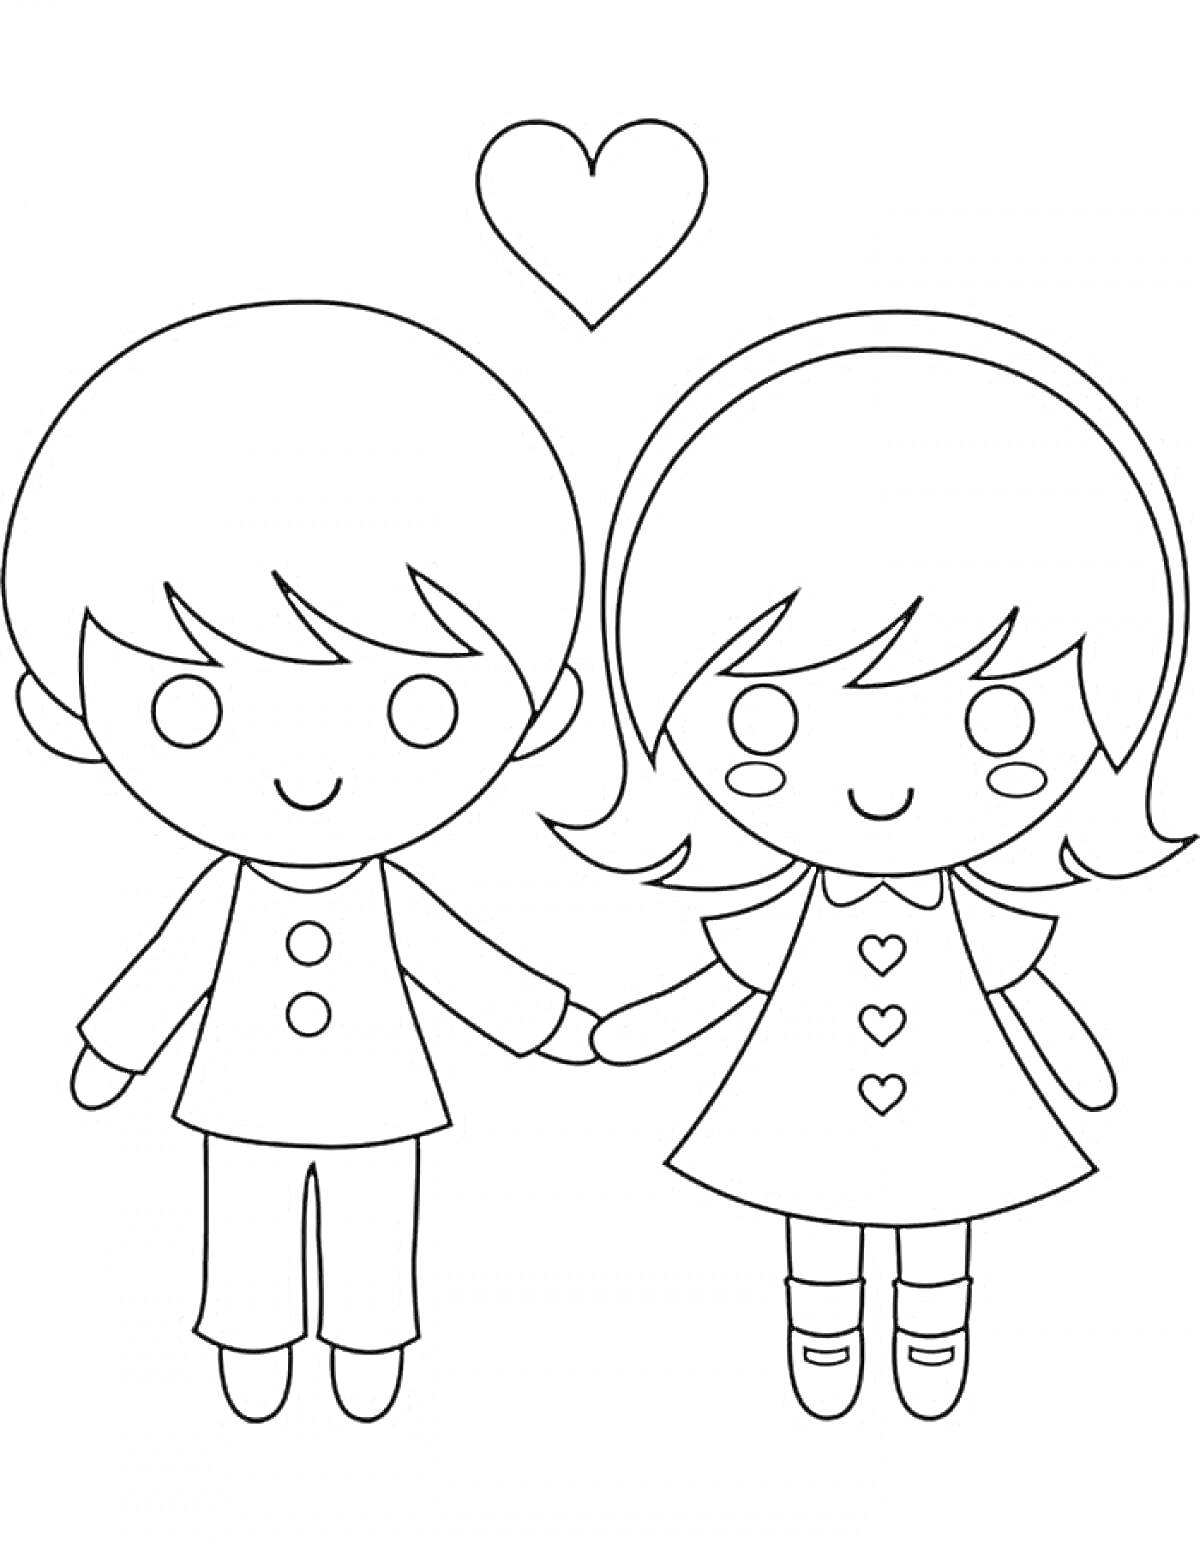 Раскраска Мальчик и девочка держатся за руки с сердцем над ними